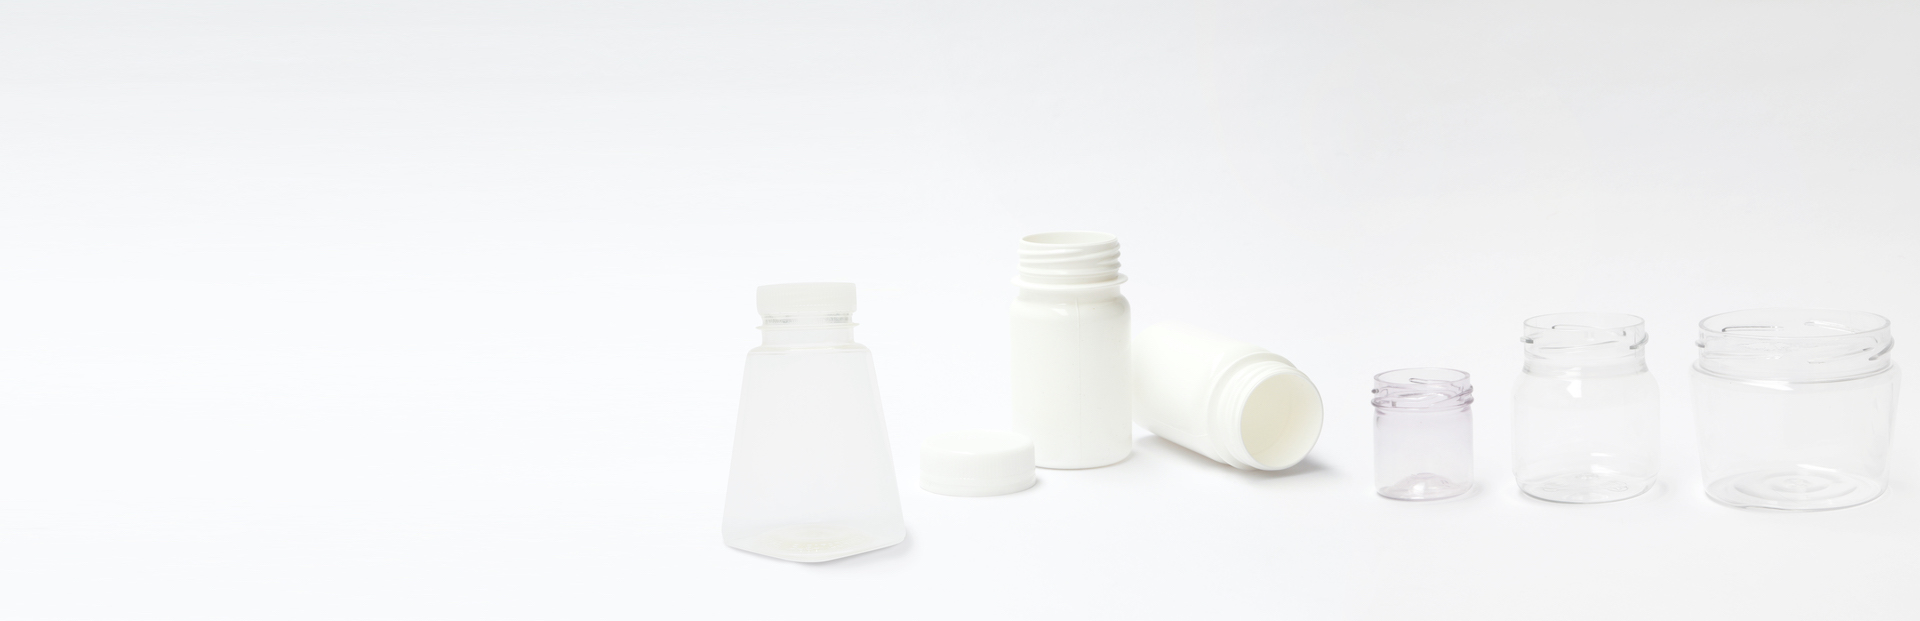 Individuelle NaKu PLA-Flaschen/Flaschen aus Biokunststoff